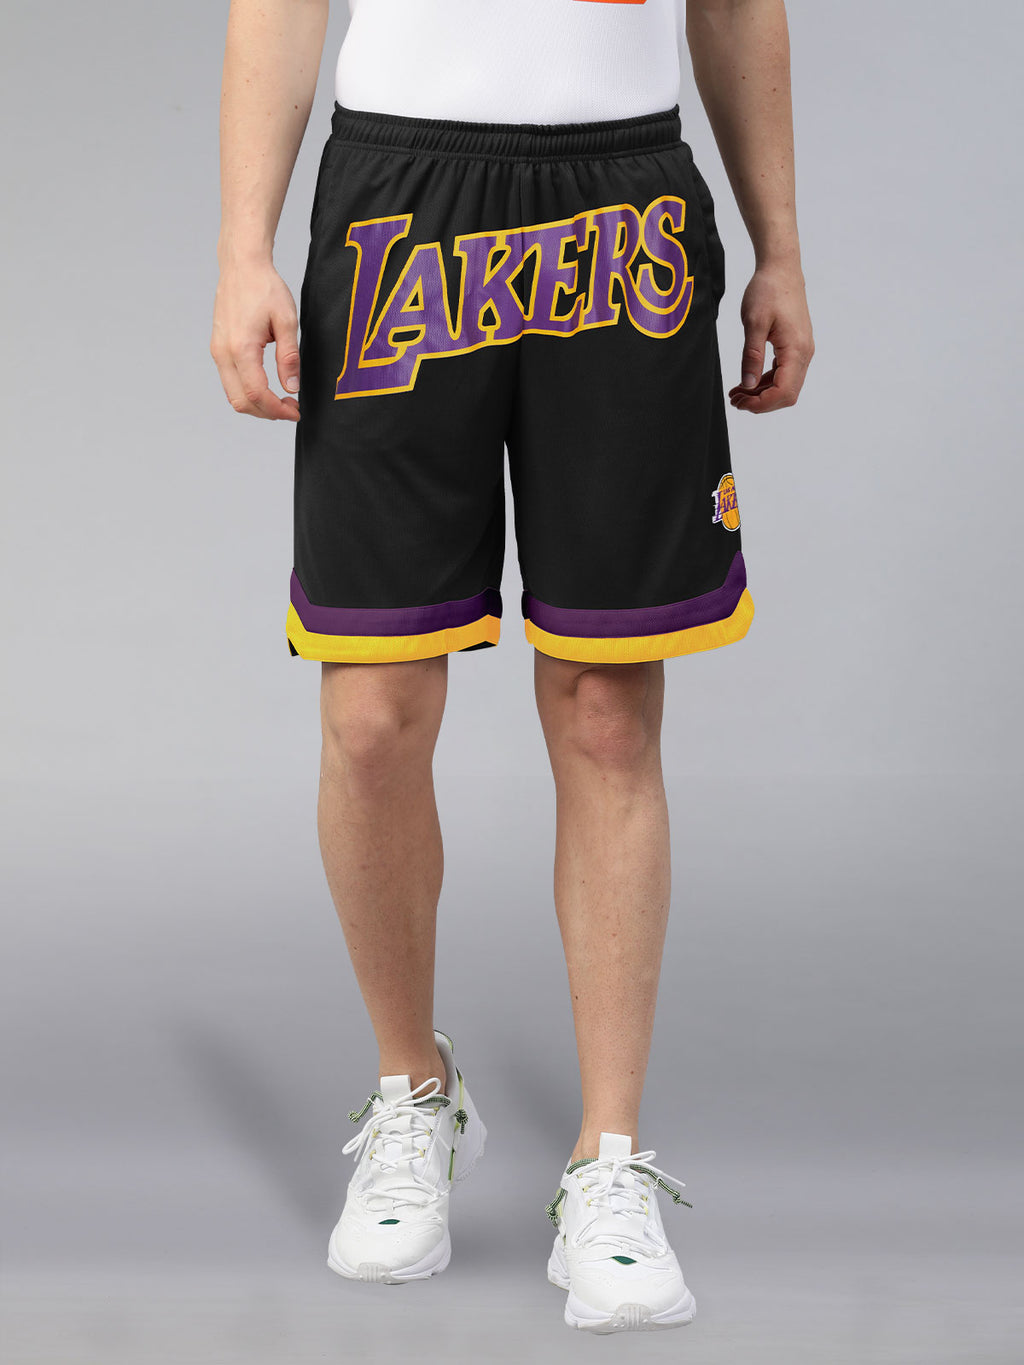 don lakers basketball shorts